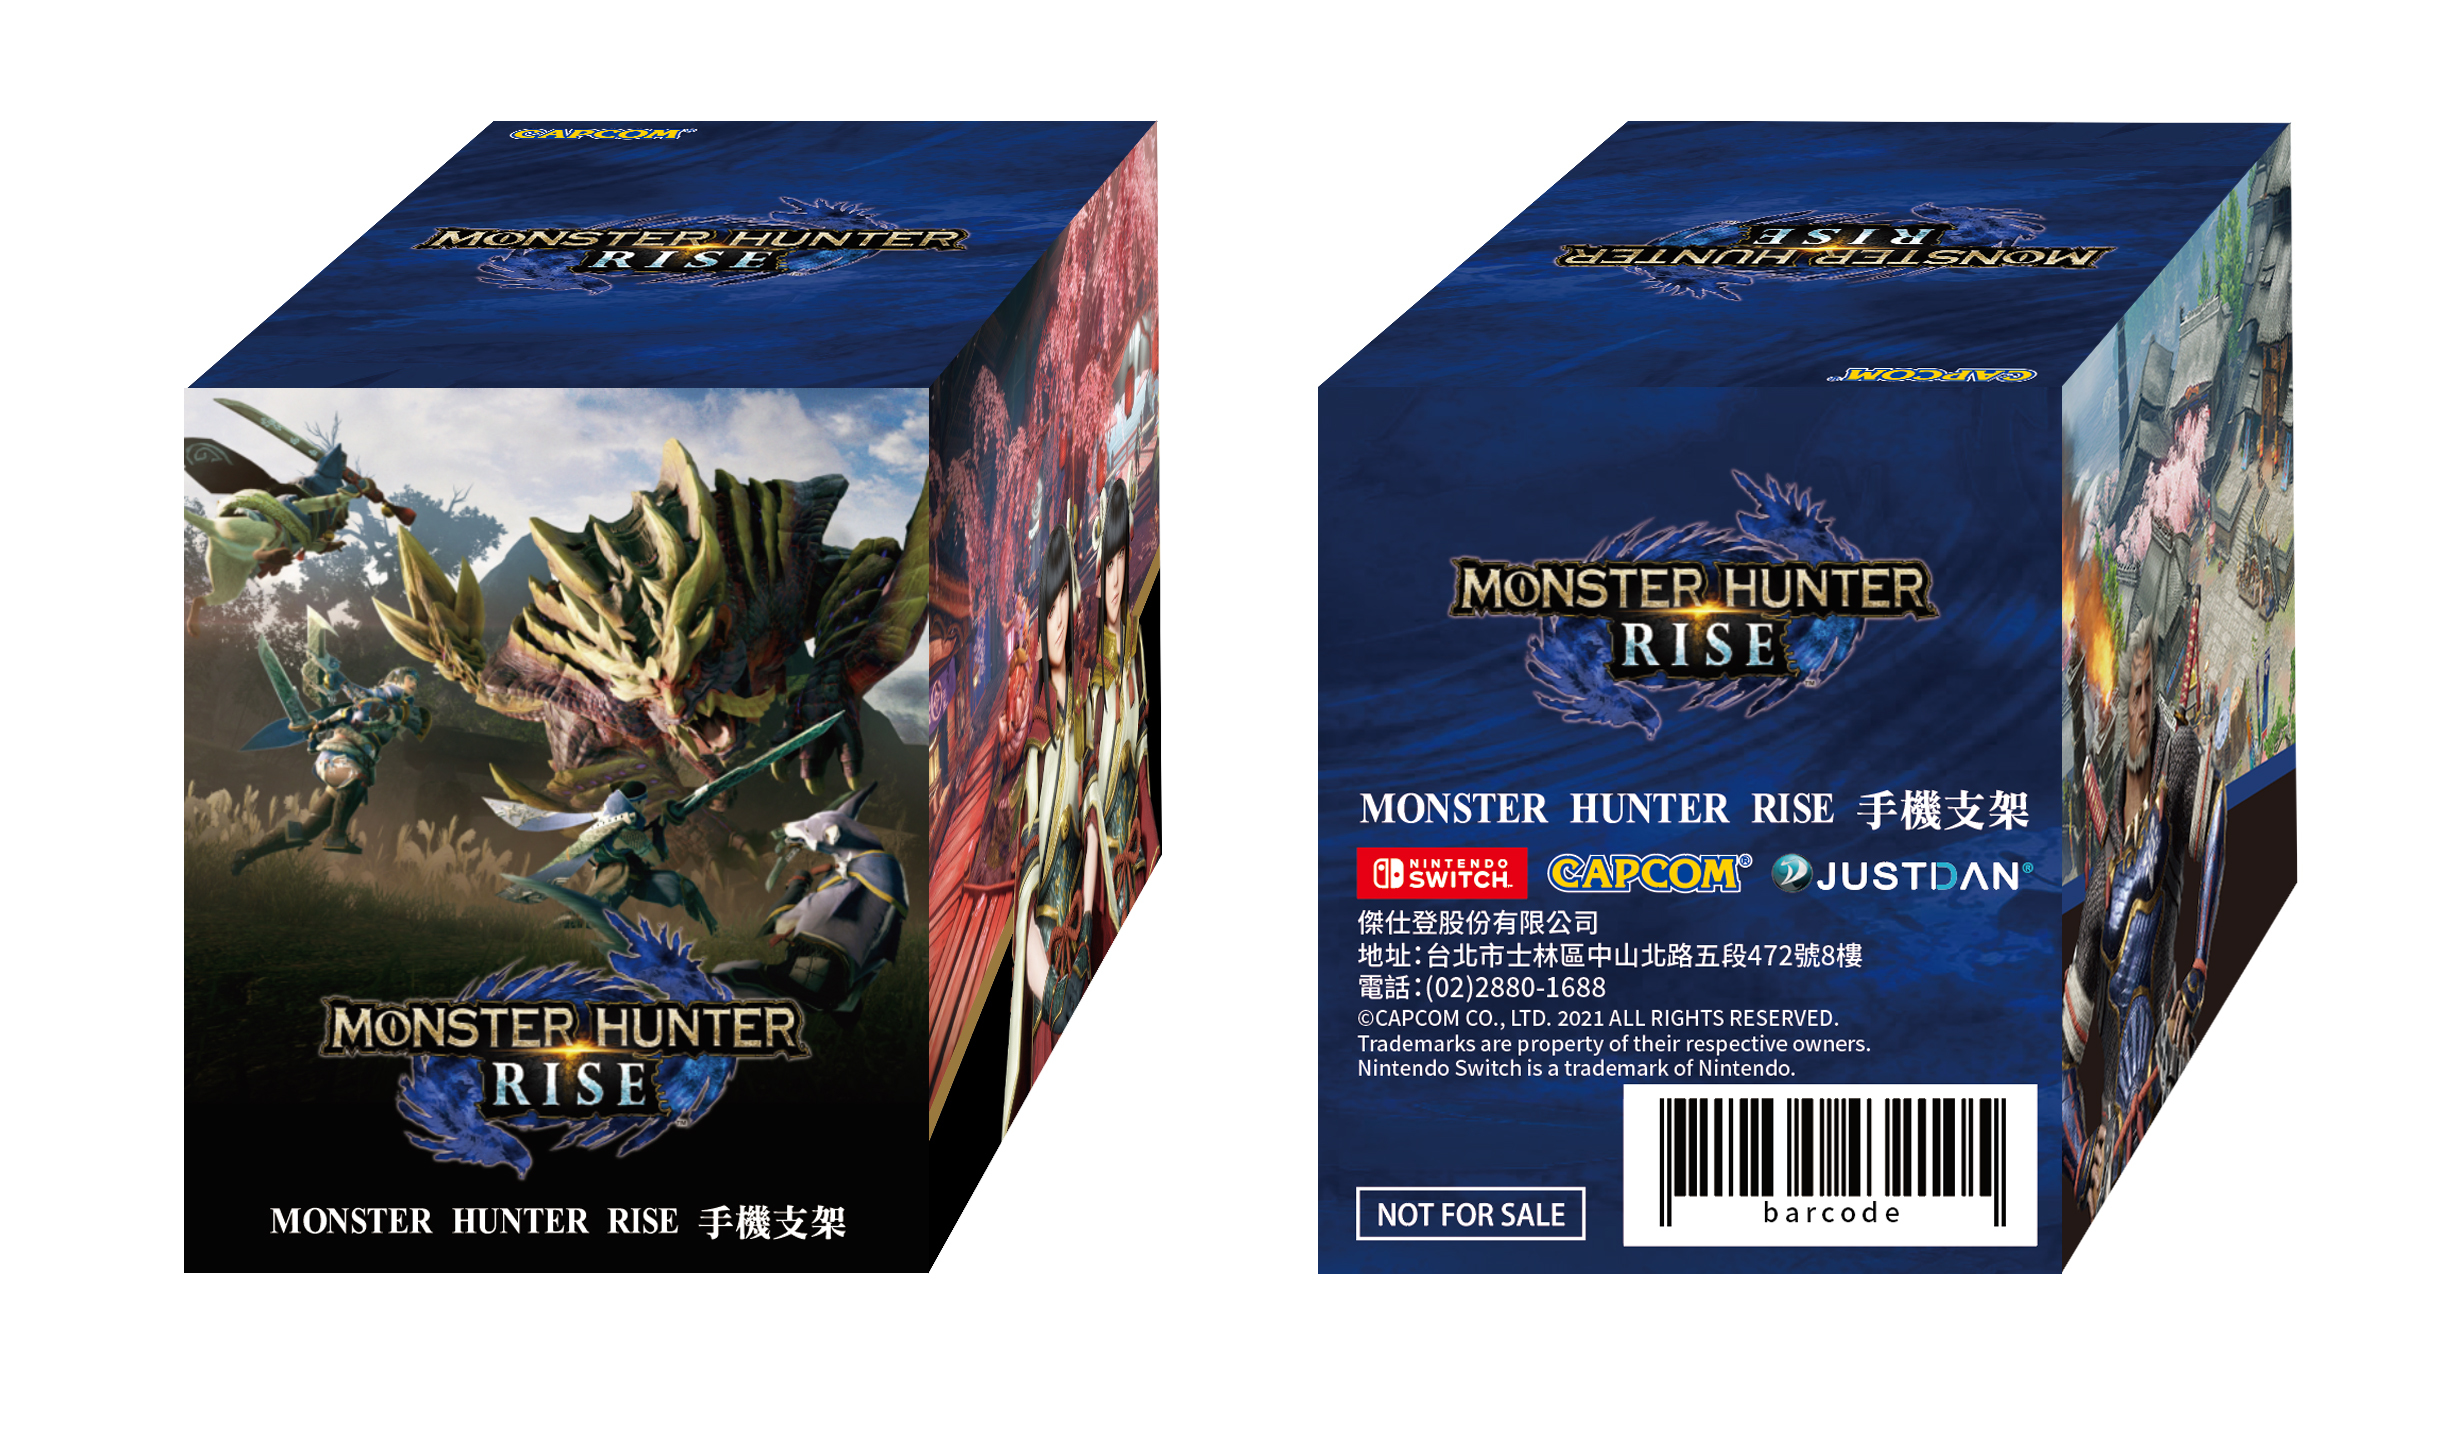 魔物獵人崛起 台灣實體限定特典 特別版主機組合建議售價正式公開 Monster Hunter Rise 巴哈姆特